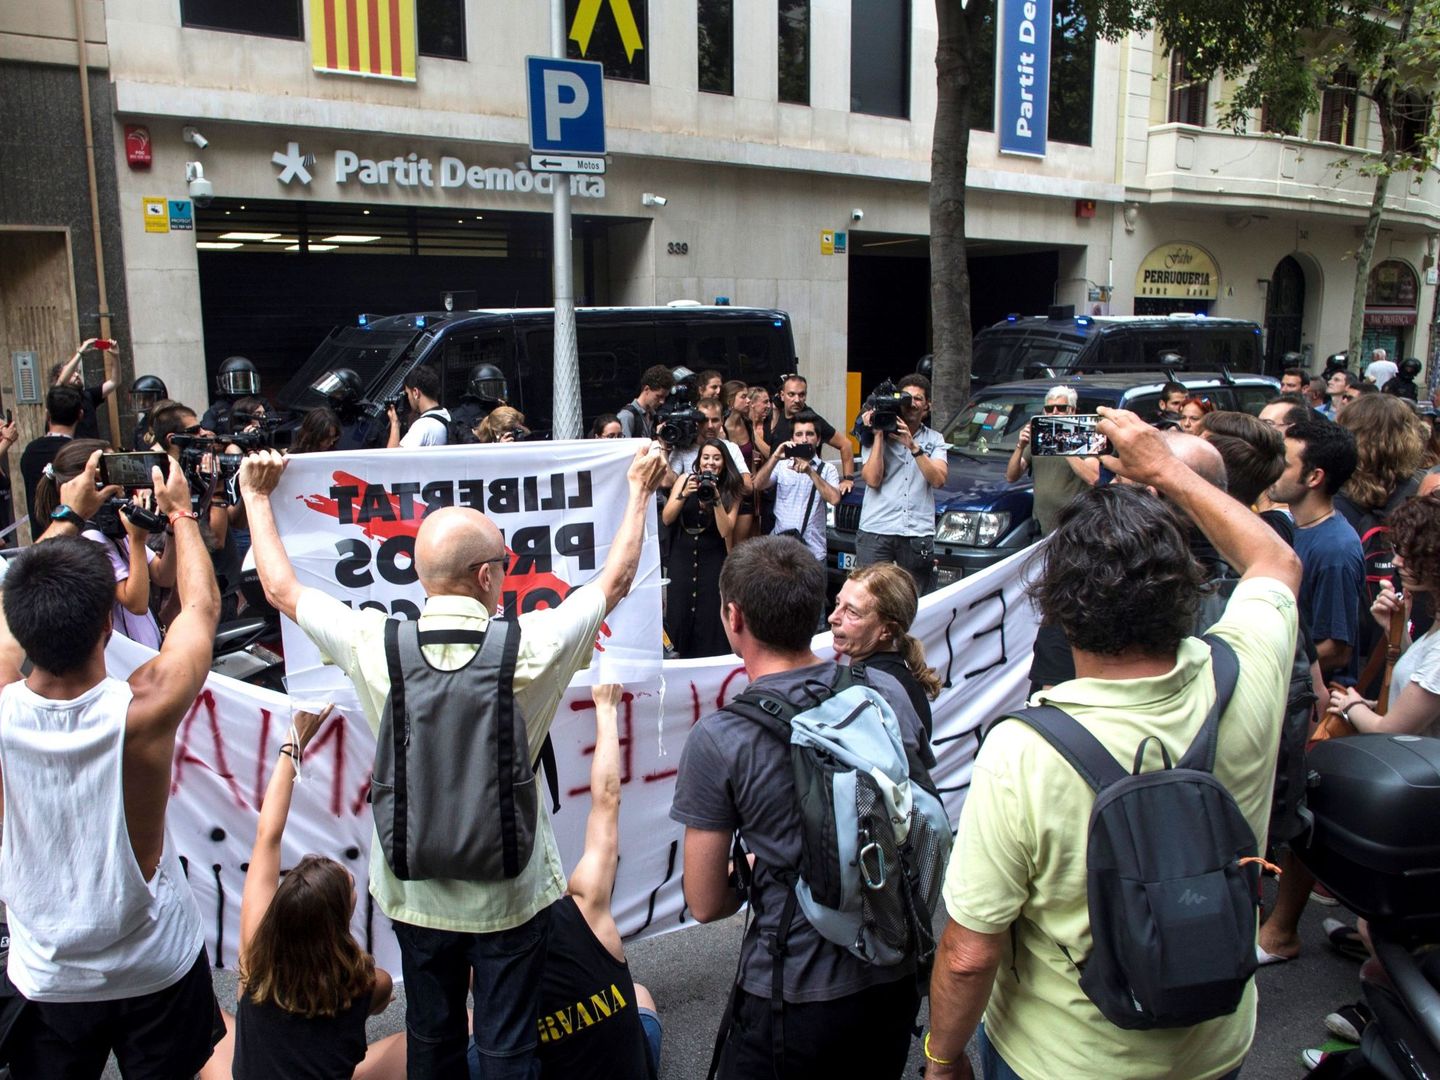 Vista de la manifestación convocada por los CDR frente a la sede del PDeCAT el pasado jueves en Barcelona. (EFE)